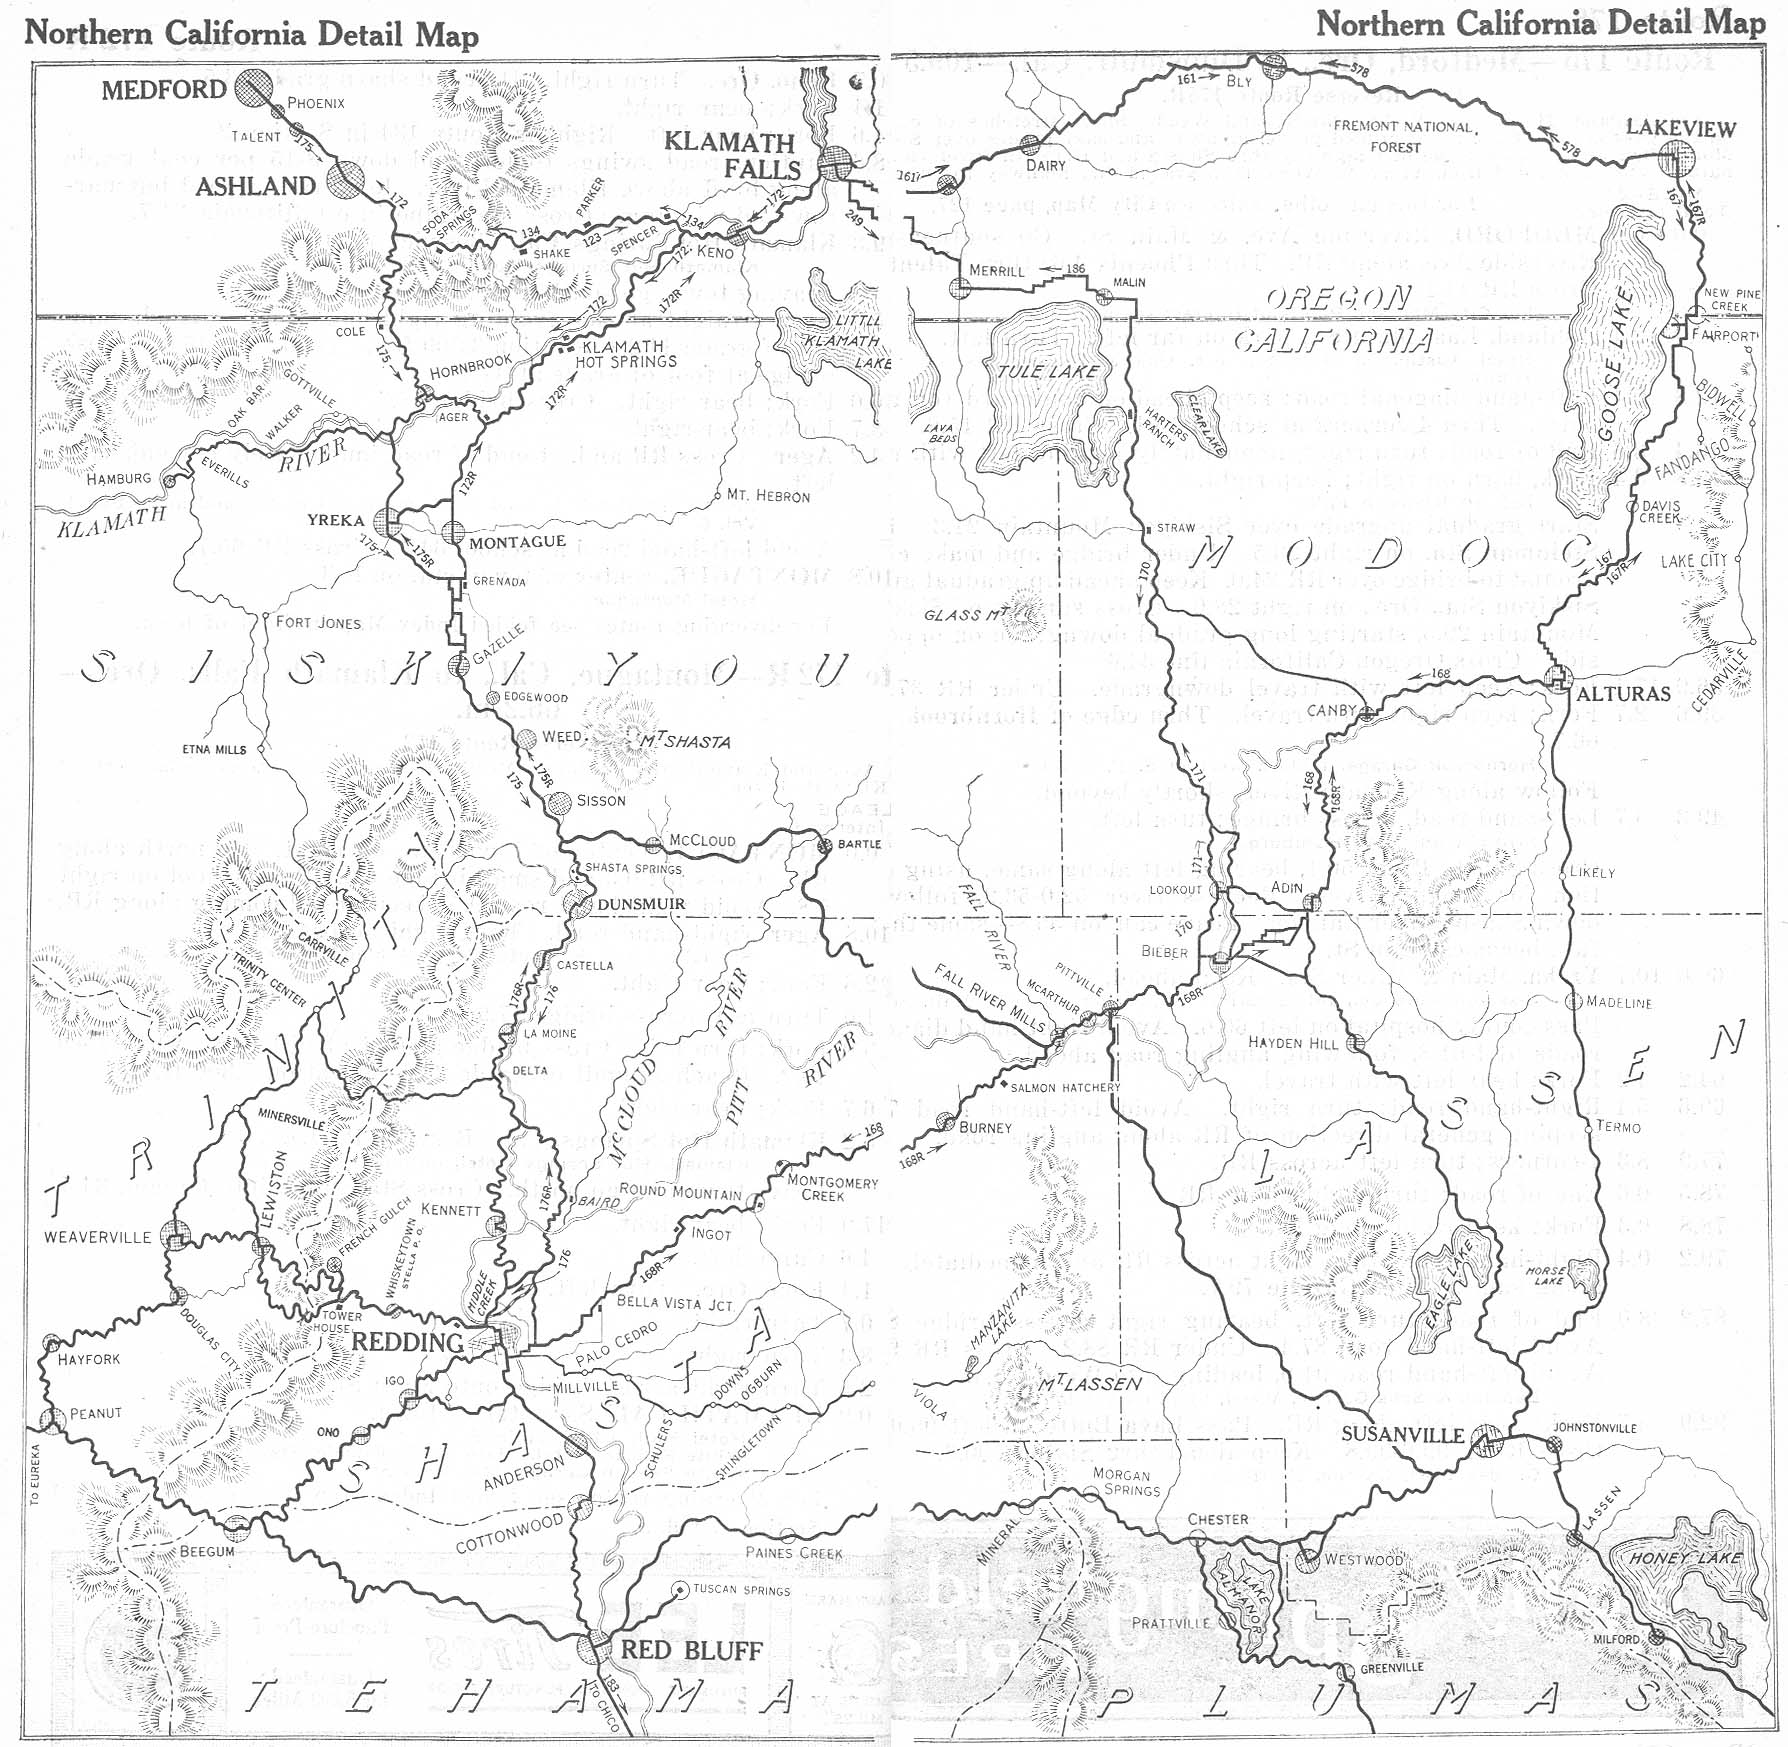 Mapa Detallado del Norte de California, Estados Unidos 1917